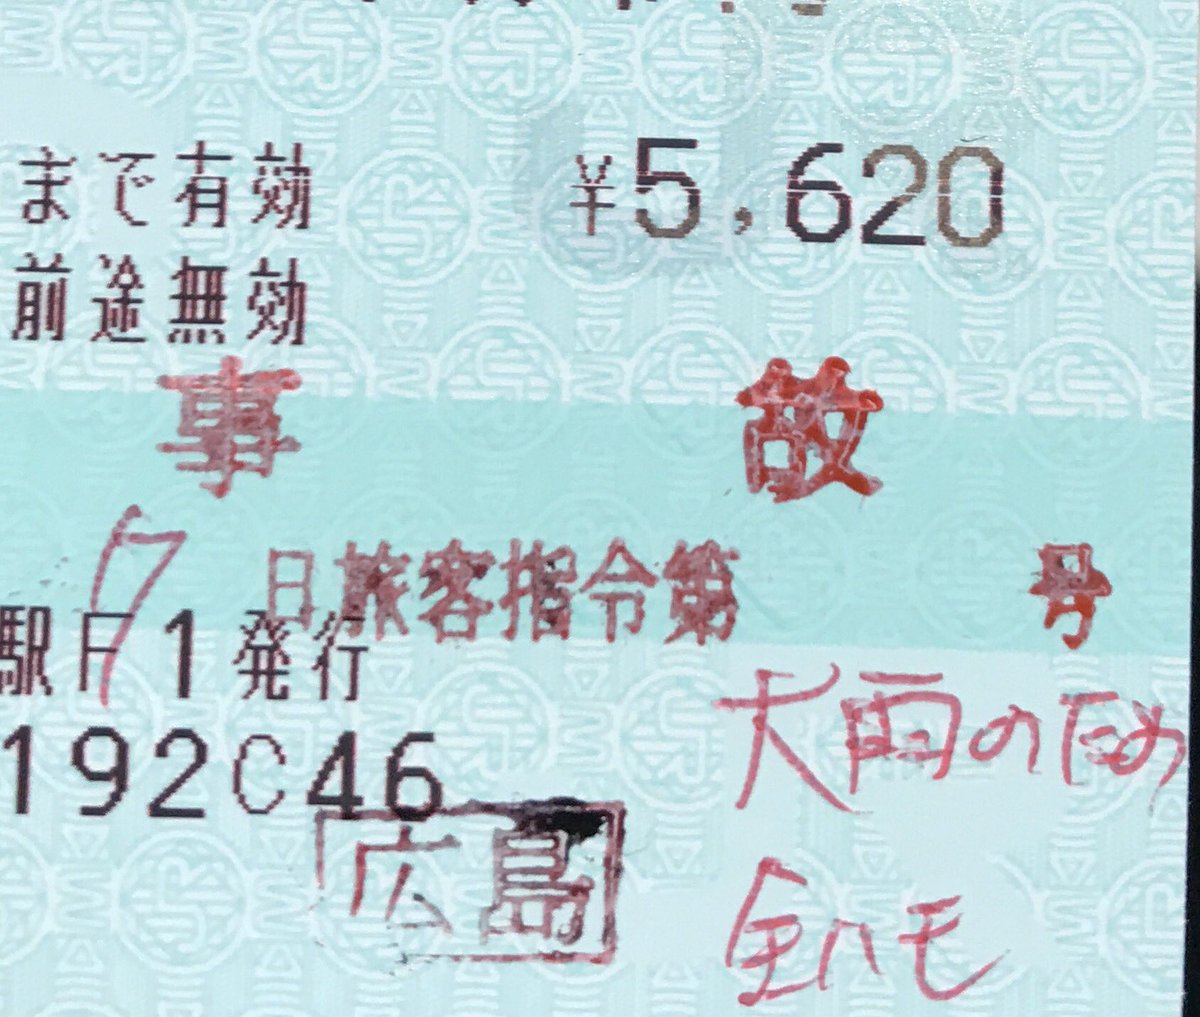 ドゥクストゥン 払い戻し証明 内容は 事故 7月7日旅客指令第 号 大雨のため 全ハモ 広島 新幹線改札横に証明専用の係員が証明を行なっていた T Co Sdu5rhw9zw Twitter